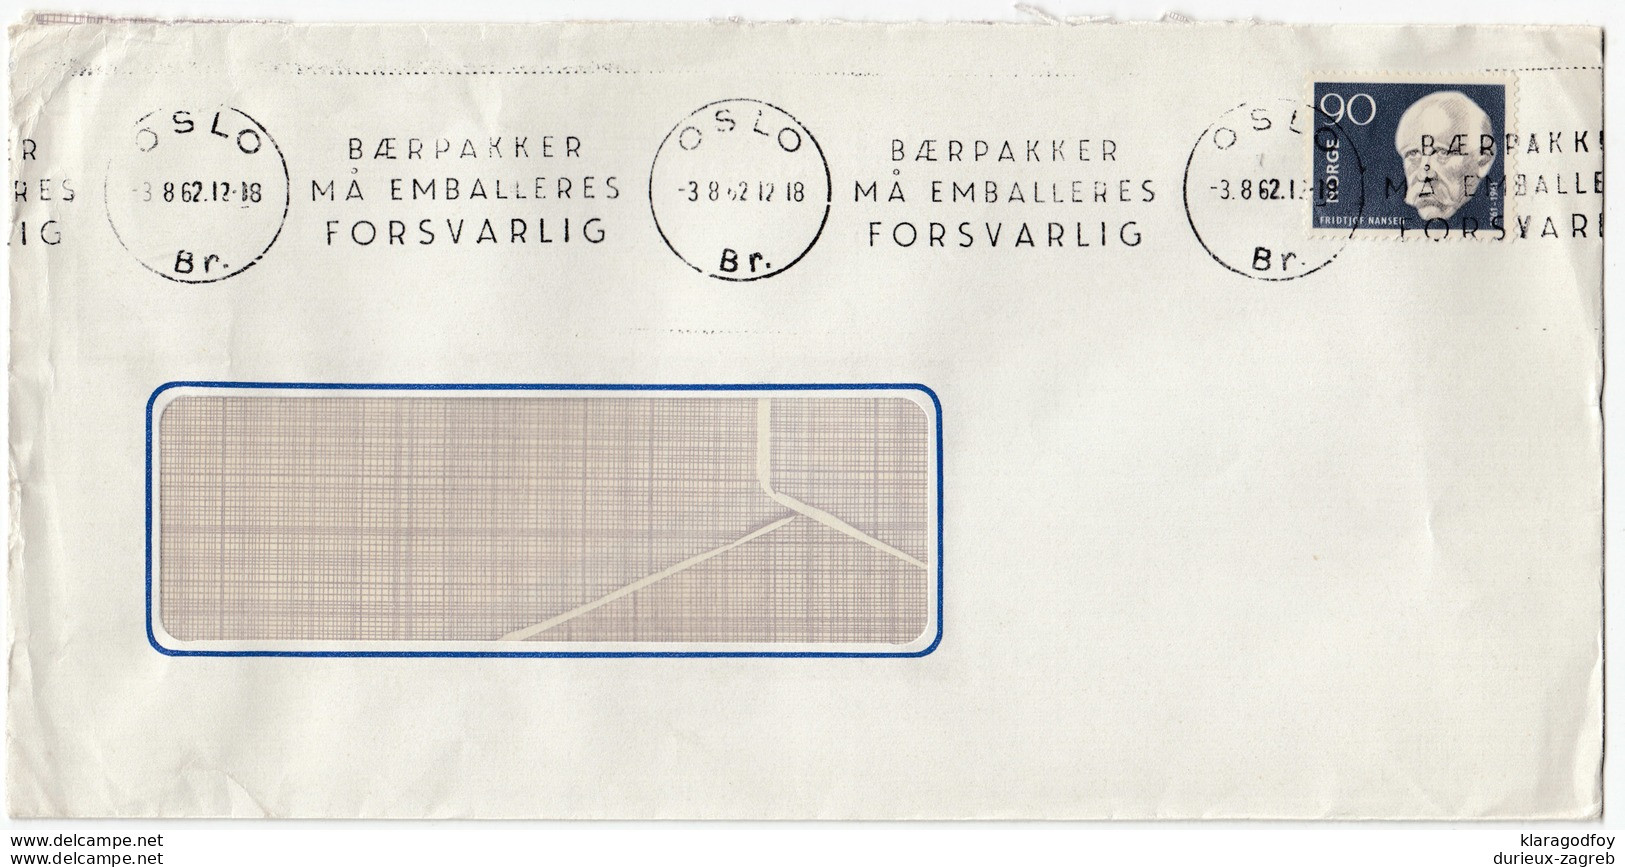 Baerpakker Ma Emalleres Forsvarlig Slogan Postmark On Letter Cover Travelled 1962  Bb161210 - Storia Postale